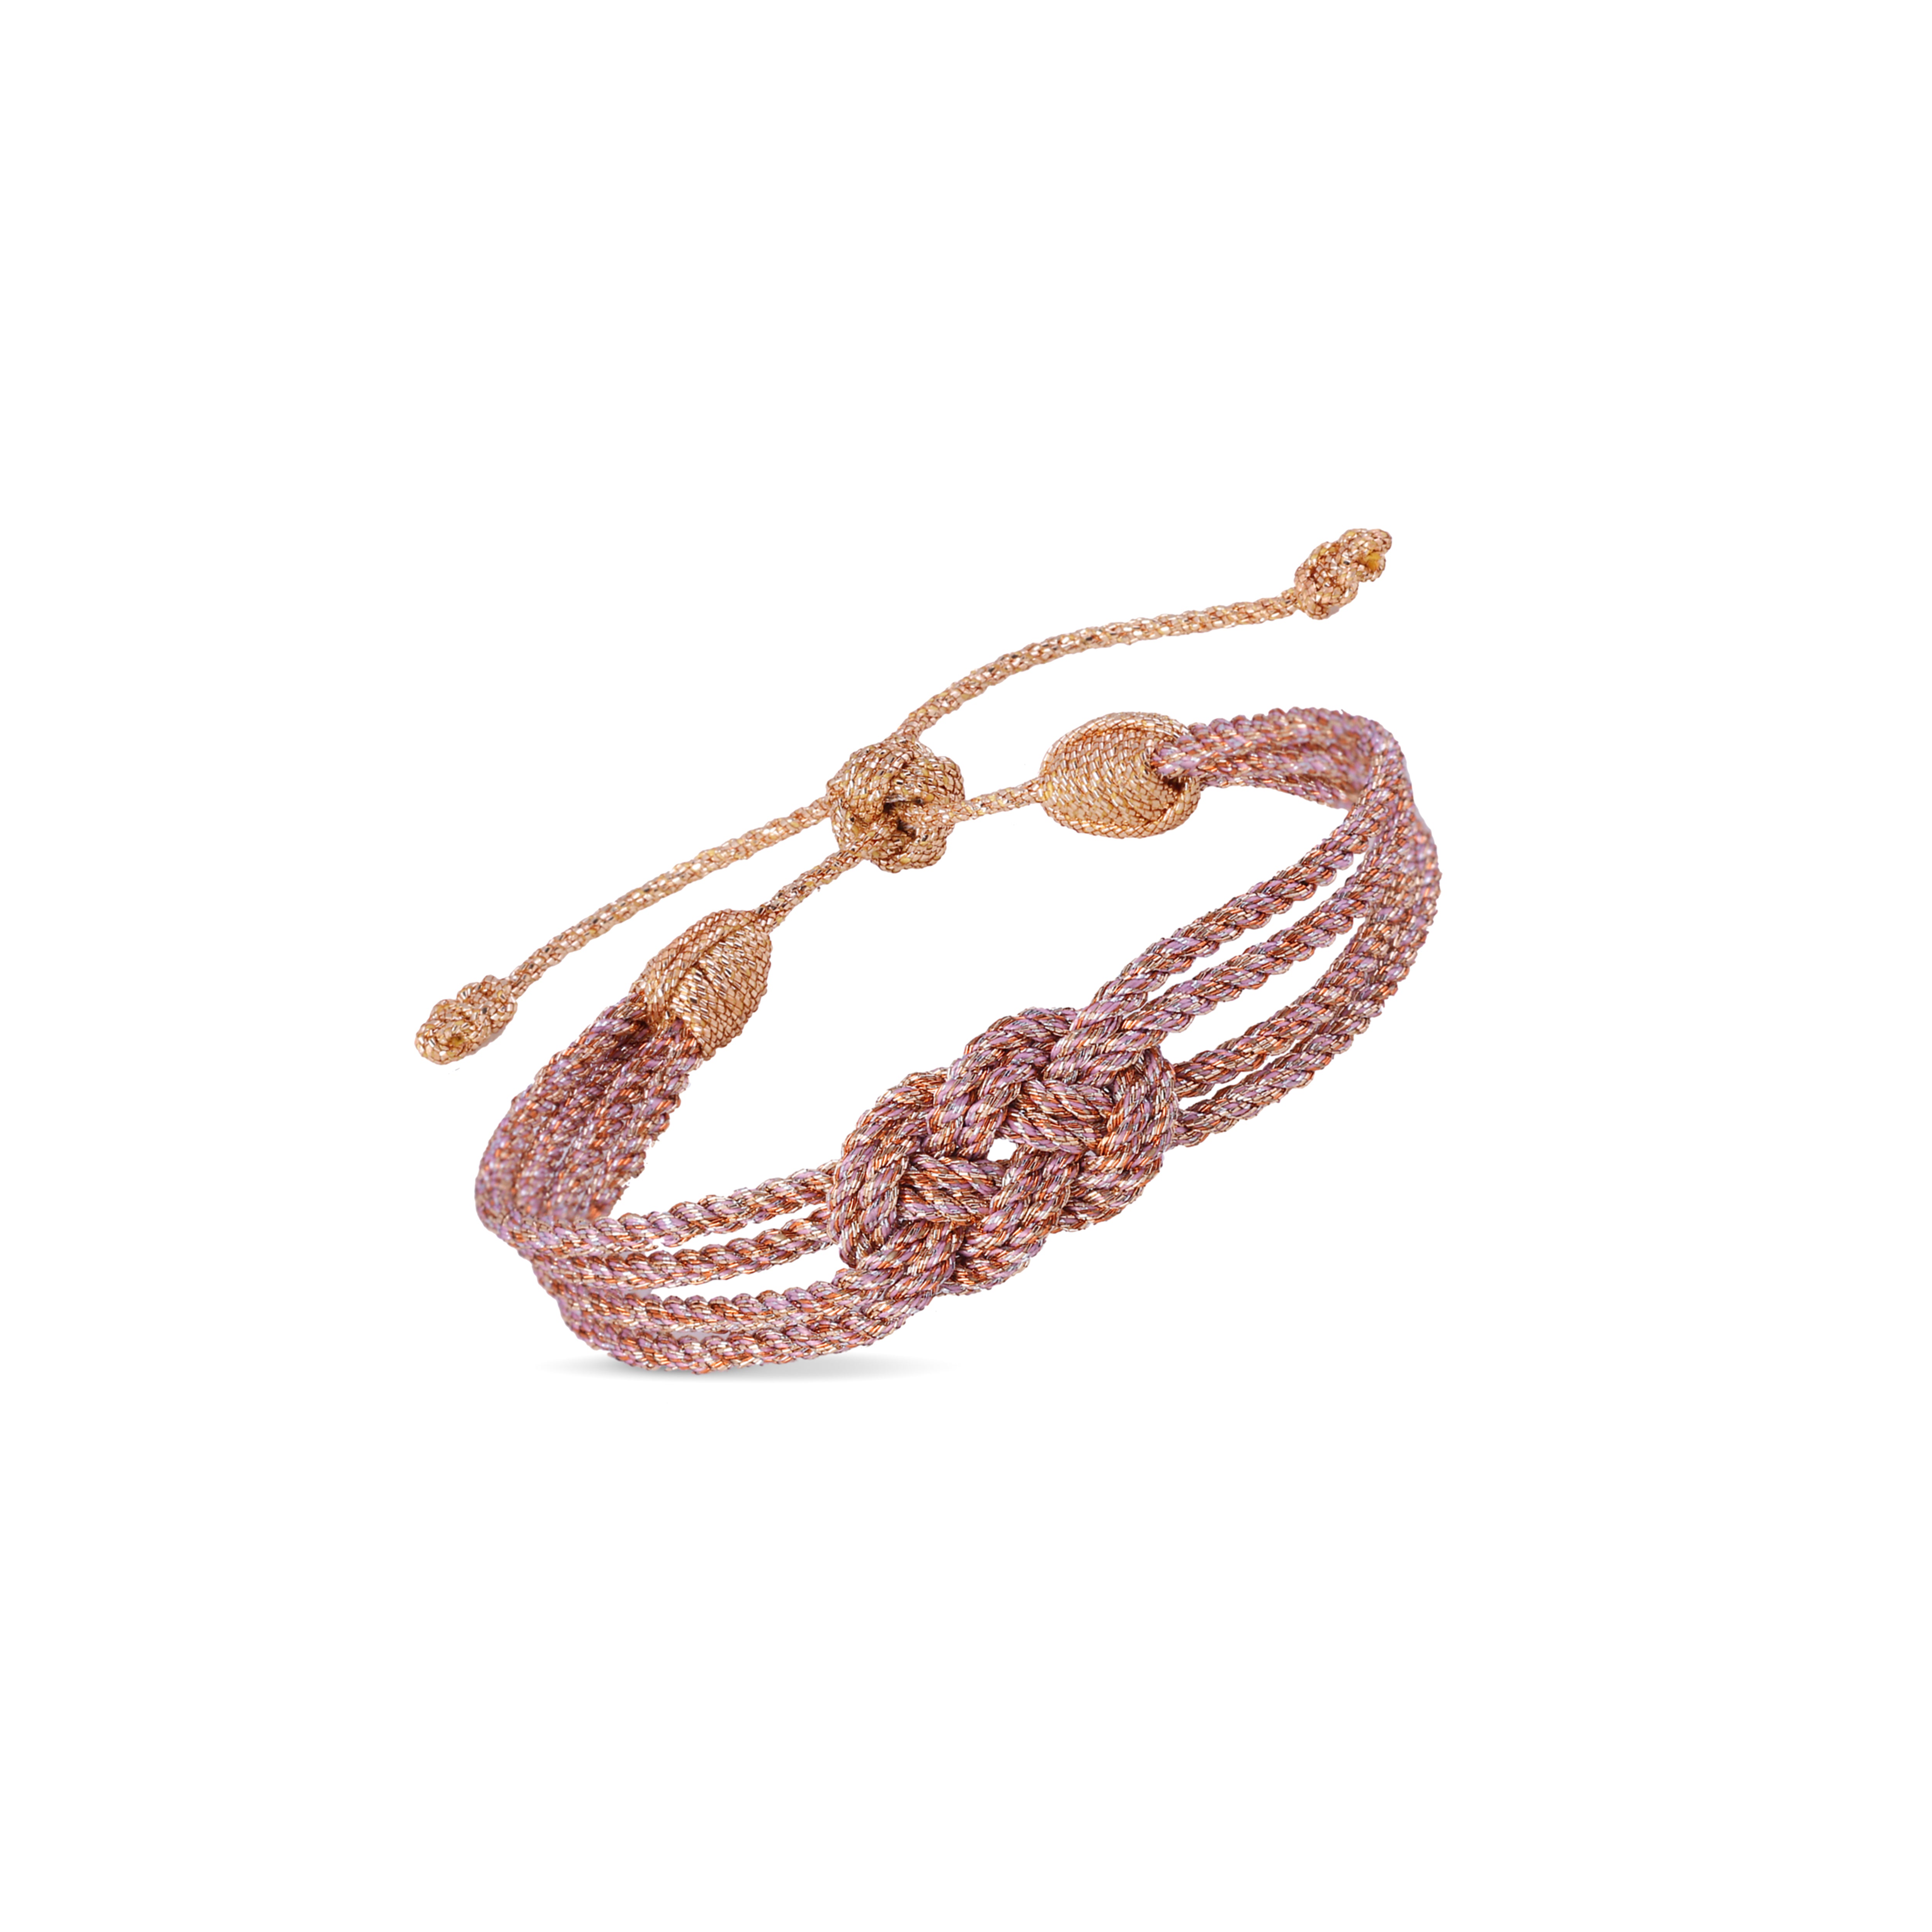 Knot n°1 Bracelet in Peach Pink